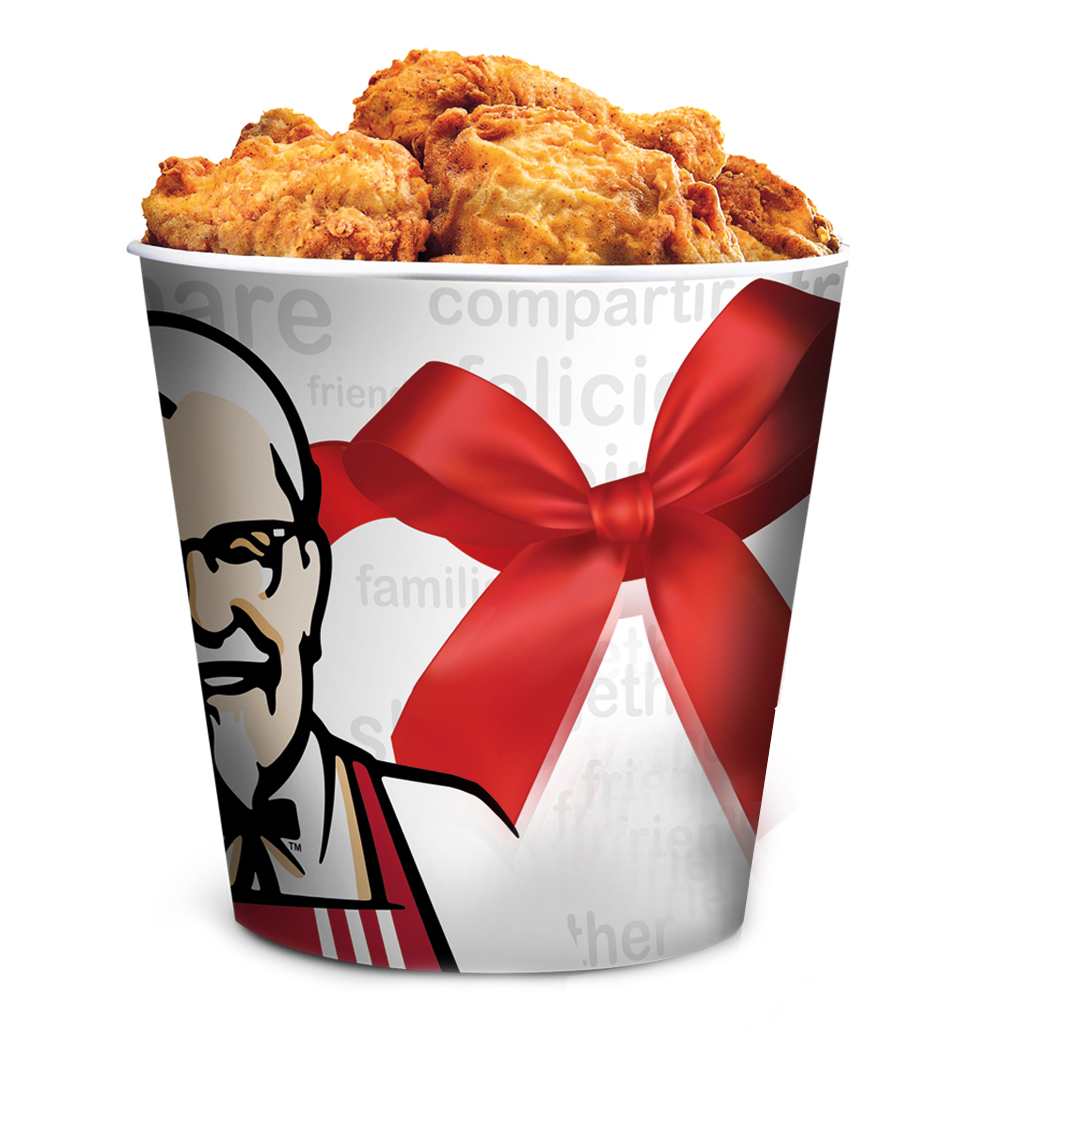 KFC ‘Festive Feast Bucket’ e gran faborito pa e temporada di fin di aña